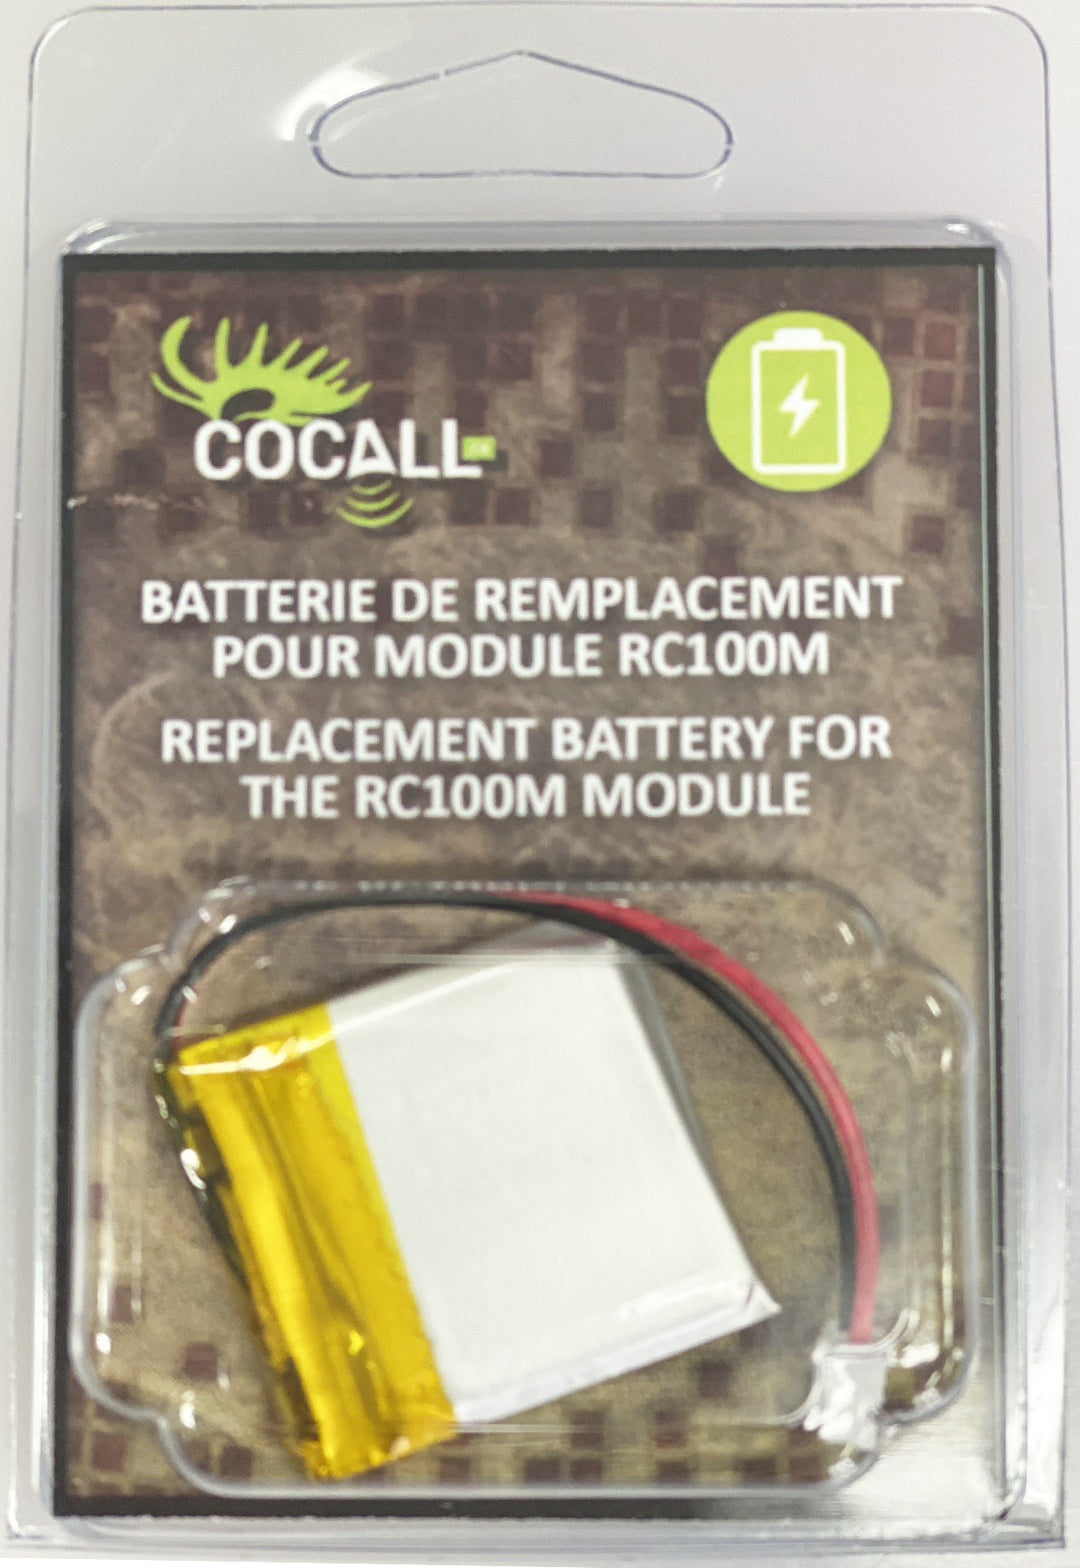 Batterie de remplacement pour module RC100M ''COCALL''